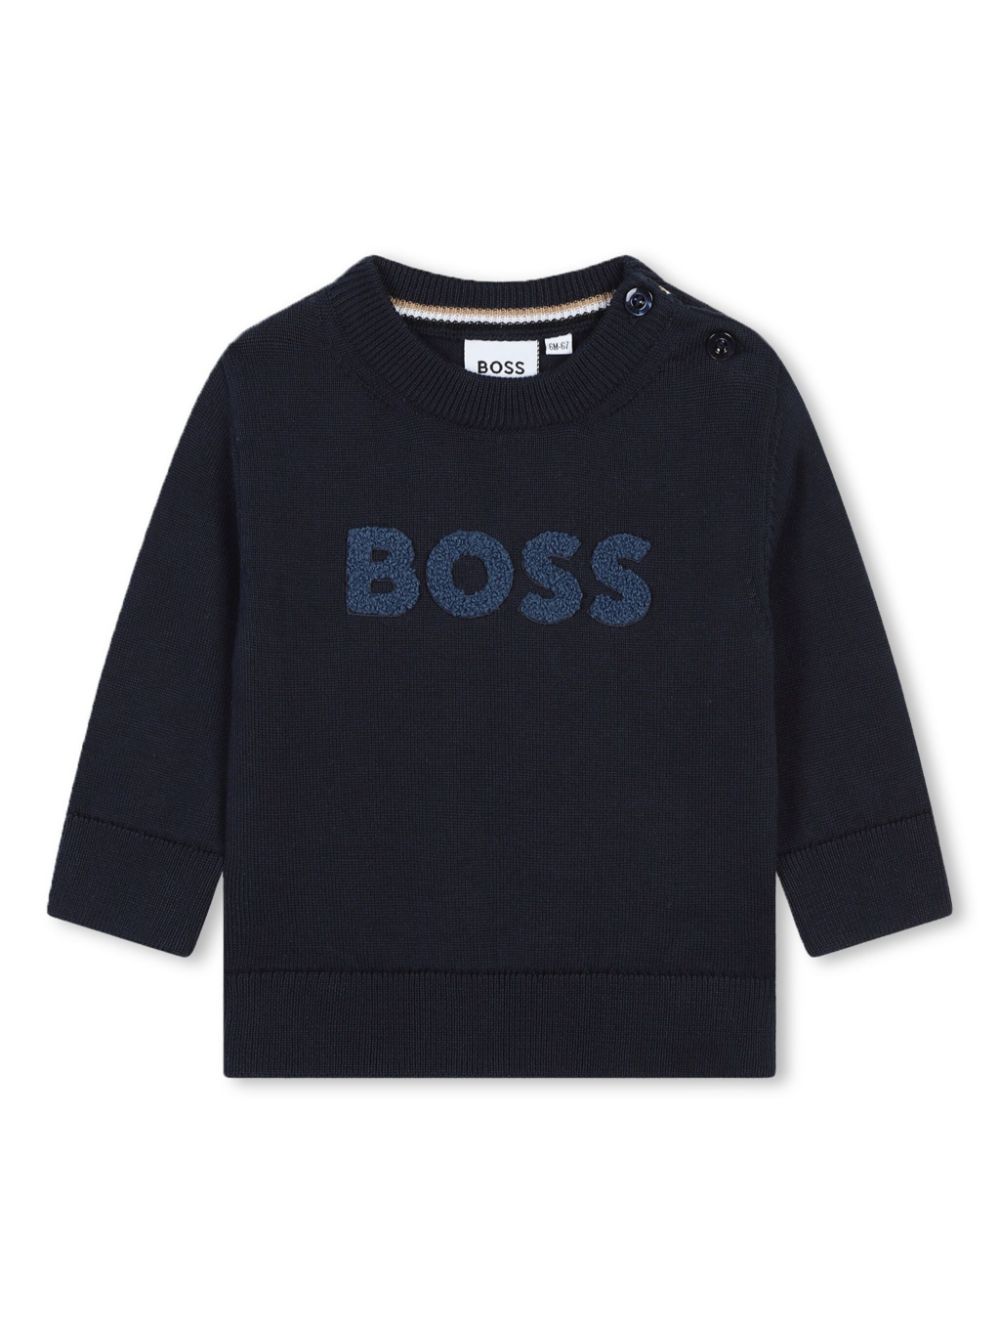 Bosswear Babies' Pullover Mit Logo In Blau